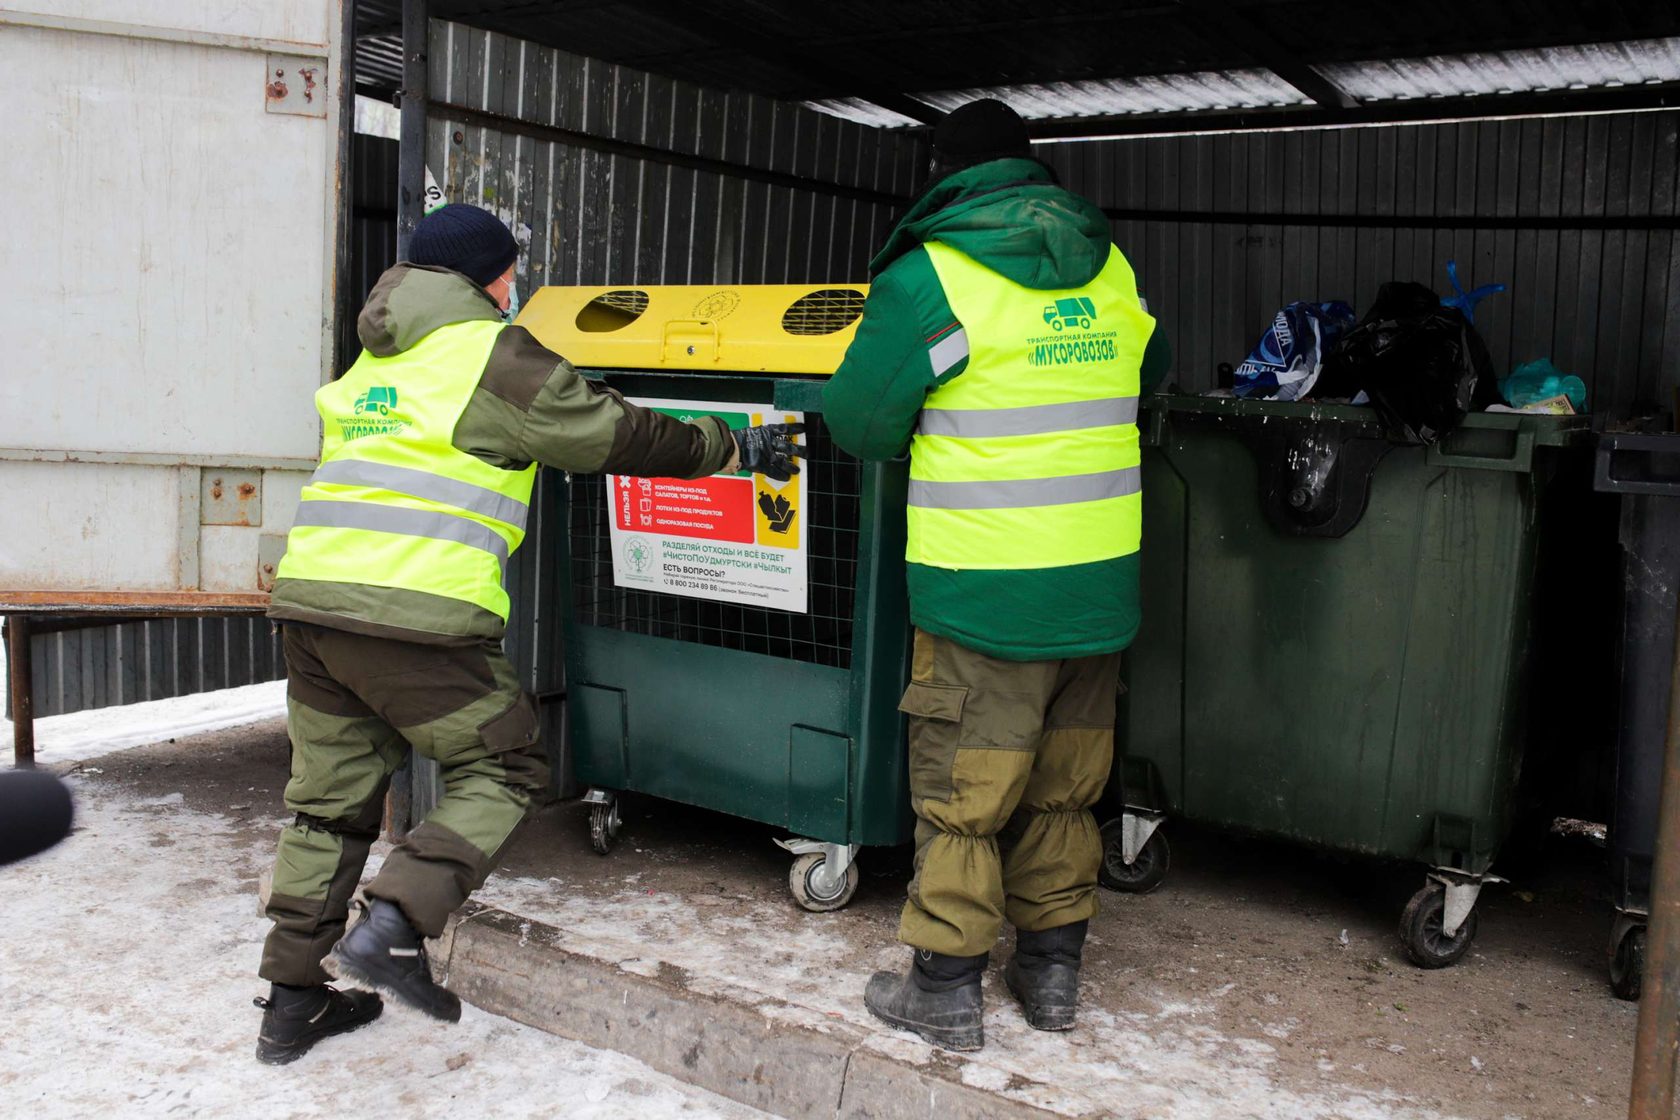 

В Ижевске идёт вторая волна установки контейнеров для раздельного сбора отходов

